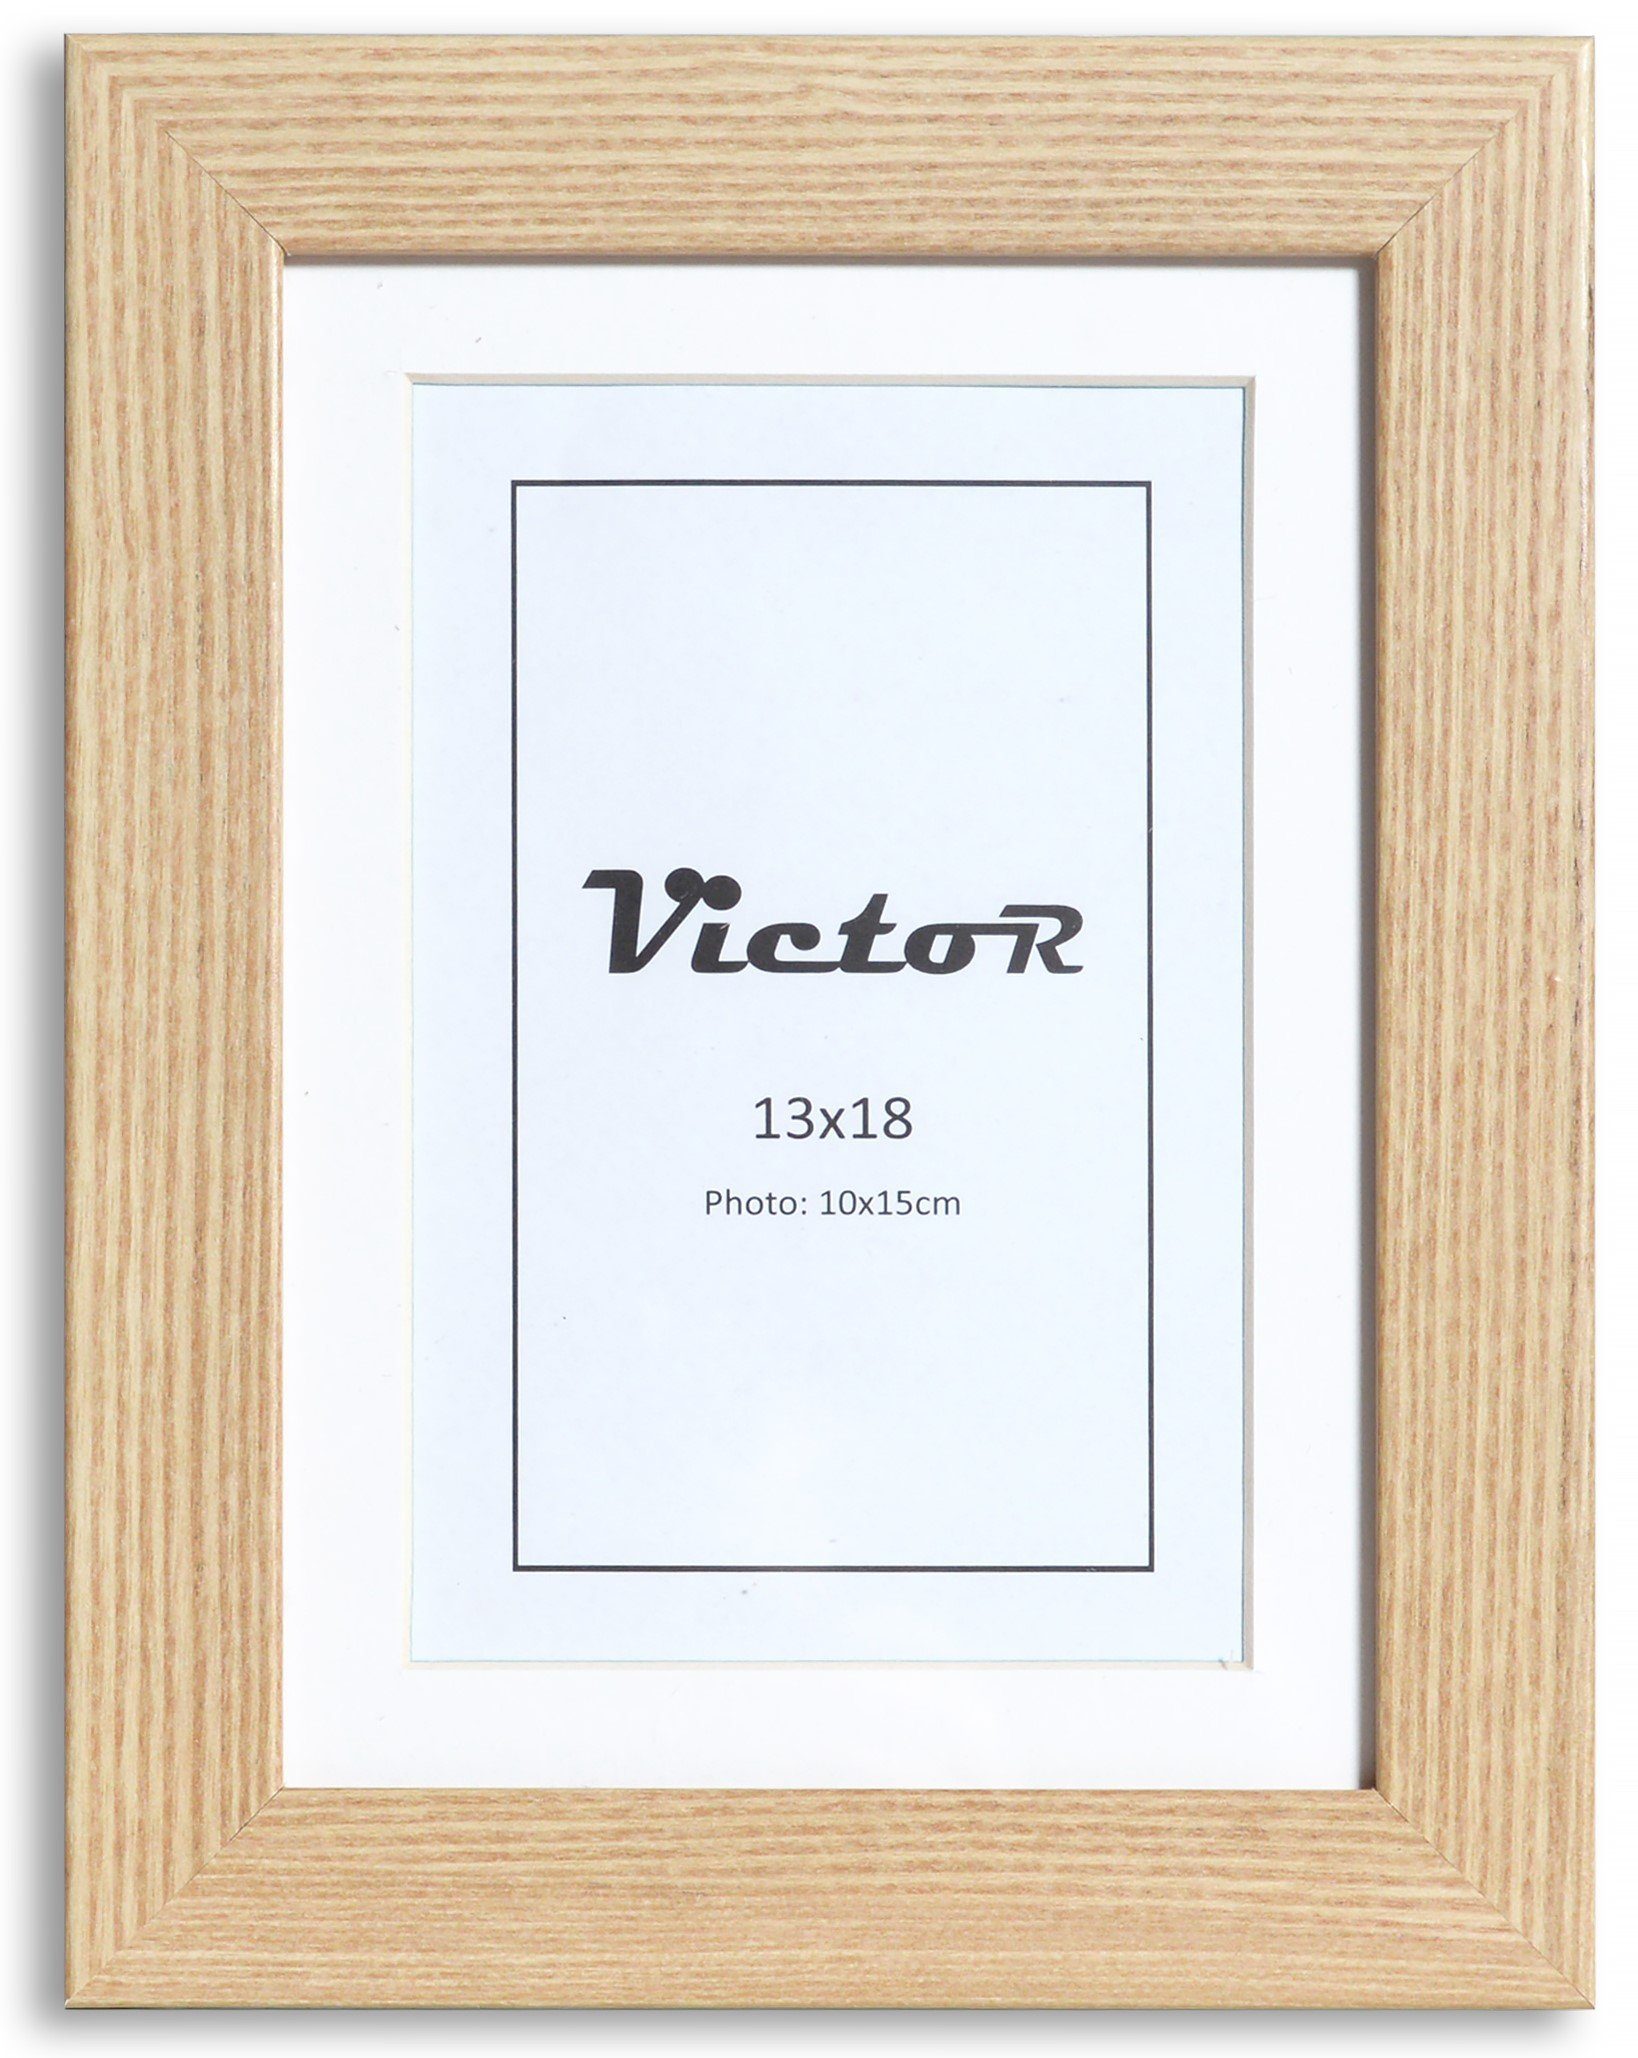 Victor (Zenith) Bilderrahmen Richter, Bilderrahmen Beige 13x18 cm mit 10x15 cm Passepartout, Holz